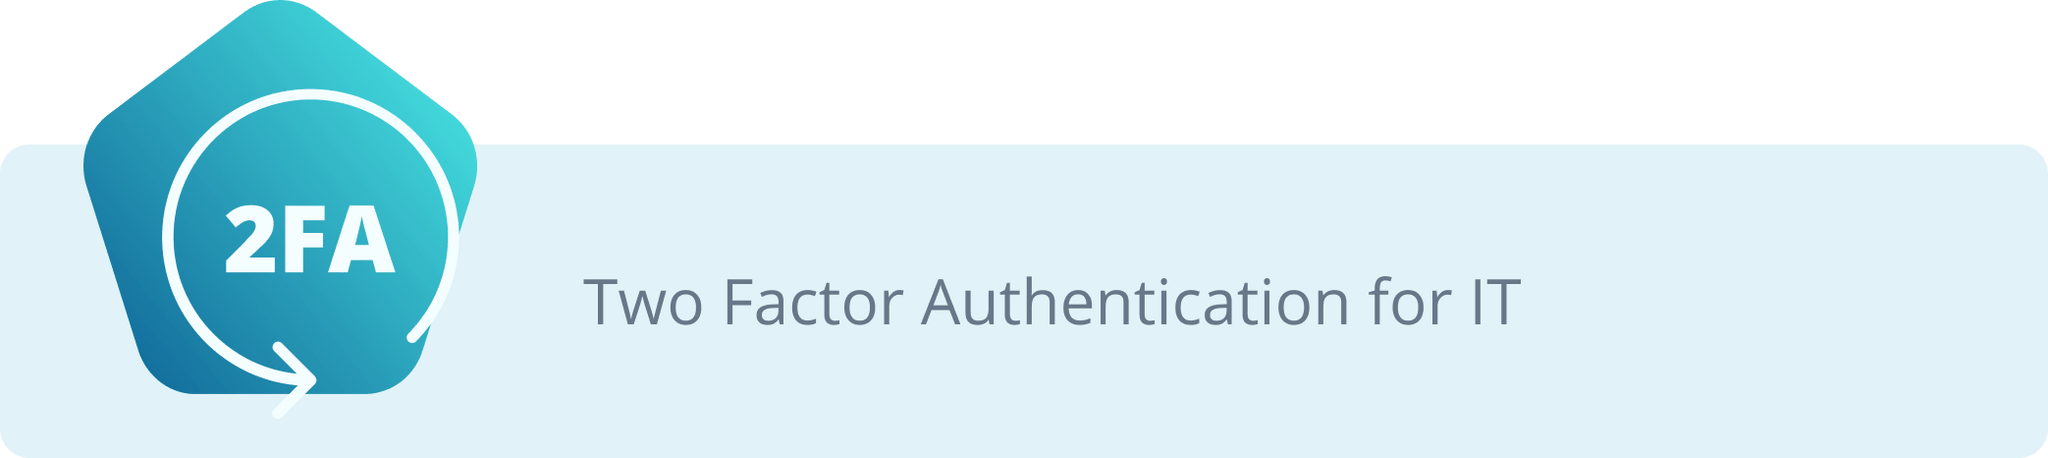 Authentification à deux facteurs pour IT